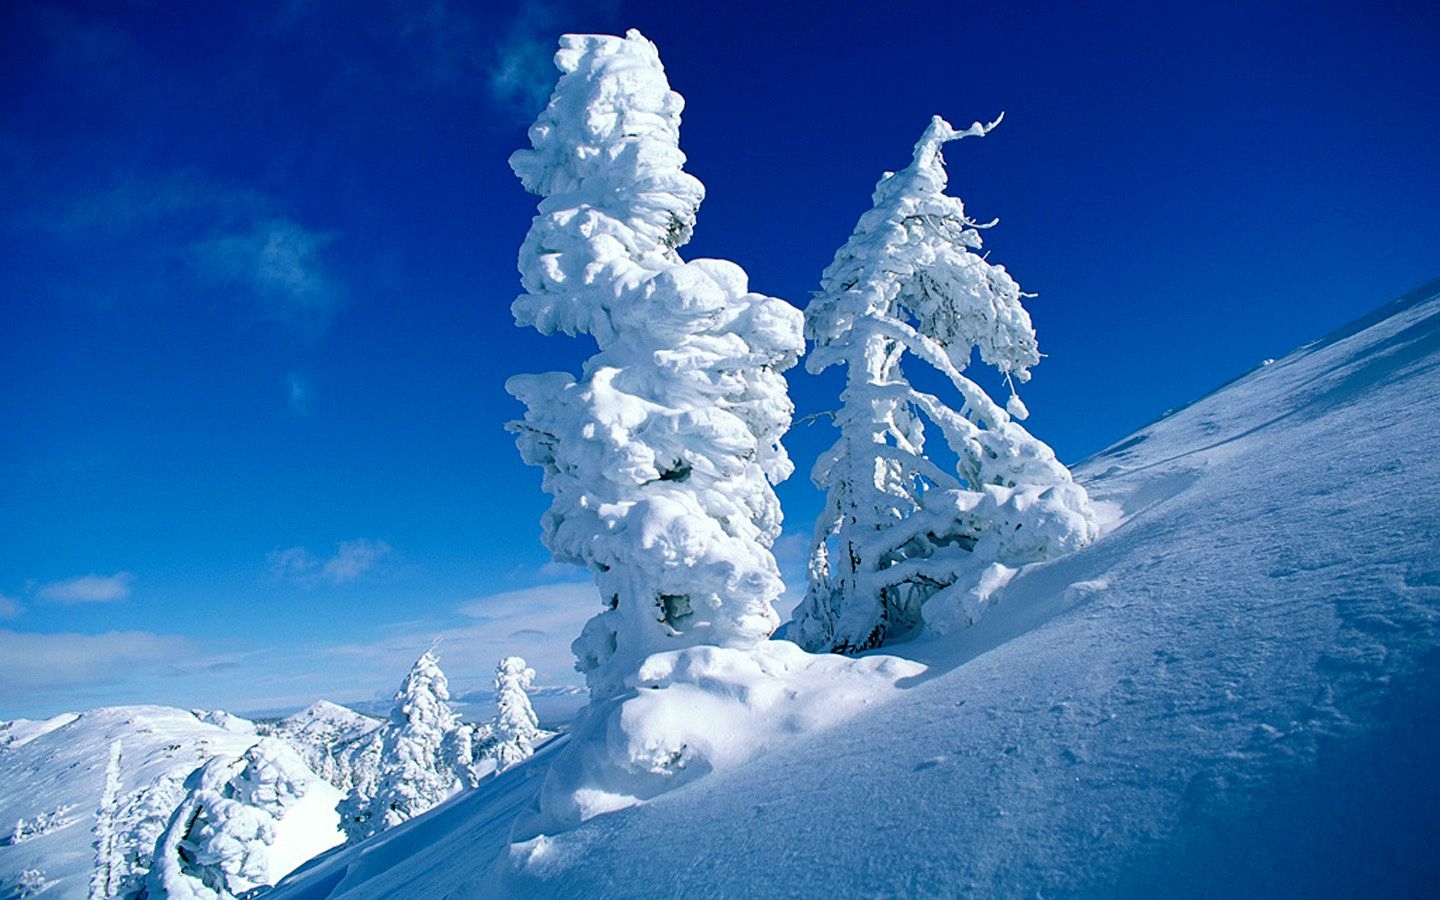 Скачать обои бесплатно Деревья, Снег, Пейзаж картинка на рабочий стол ПК